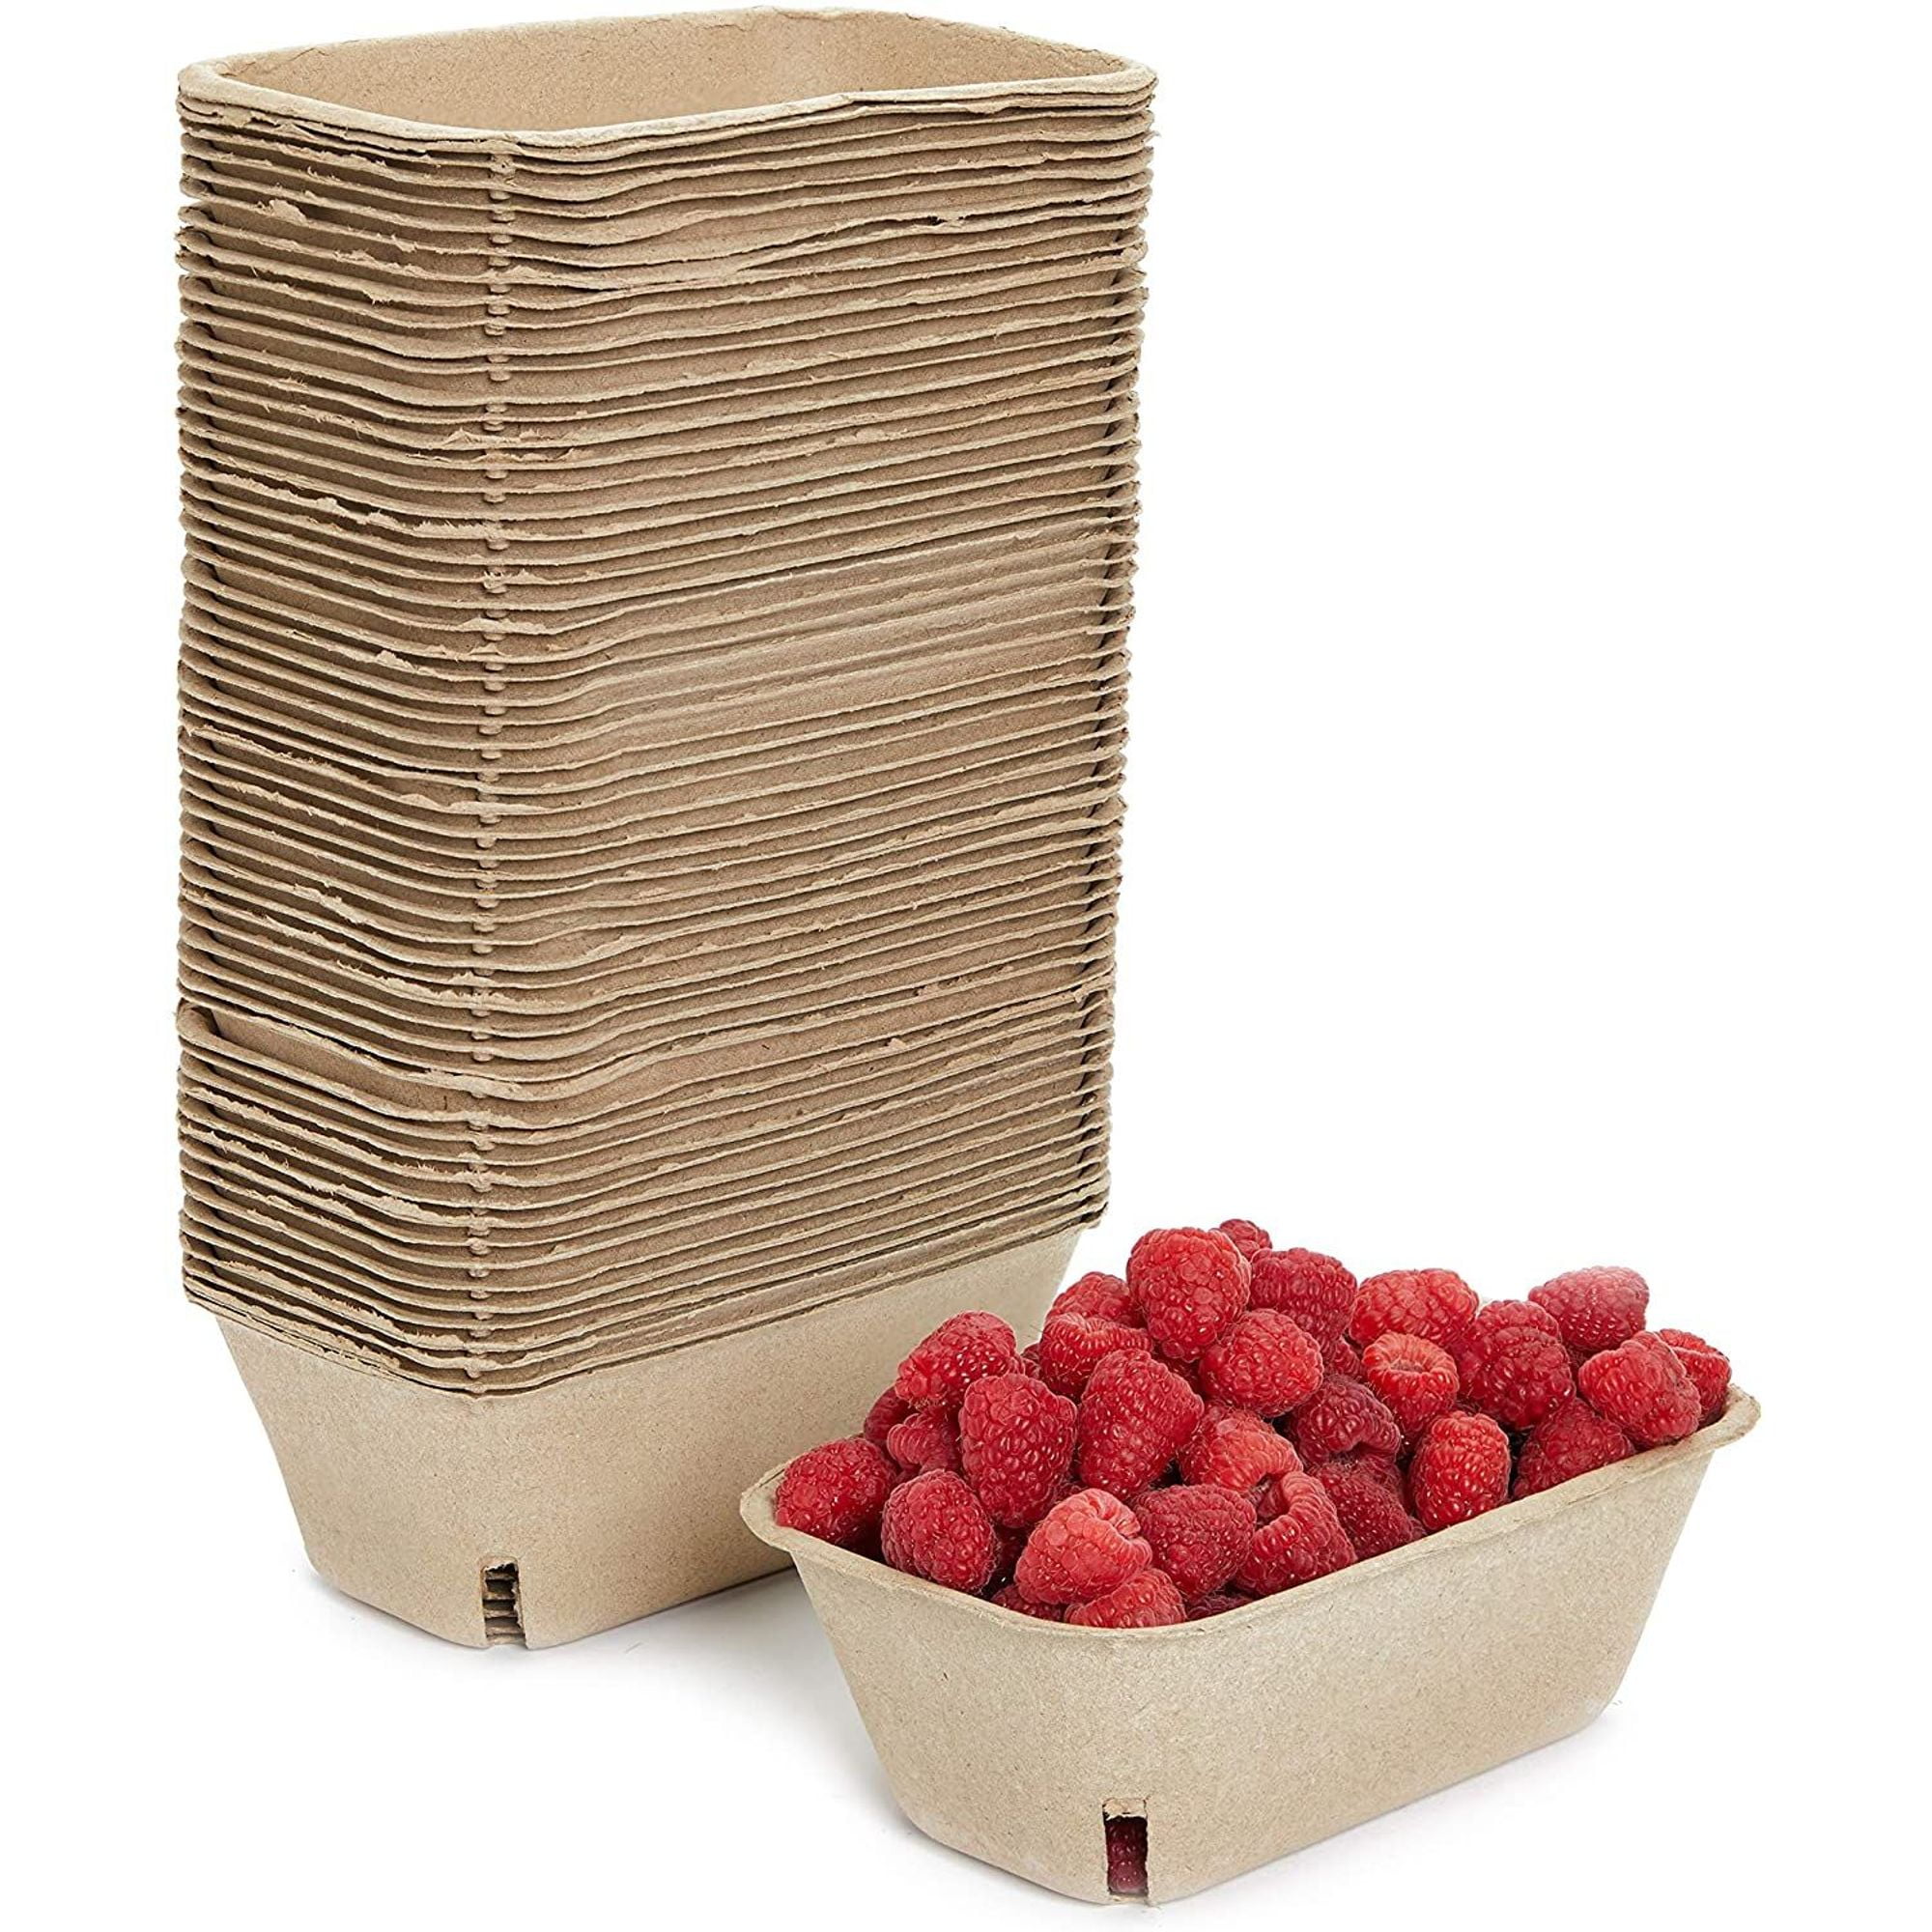 show original title Details about   2 Pcs Fruit Vegetable Crate Stacking Storage Box 60 x 40 x 21,8 cm gastlando